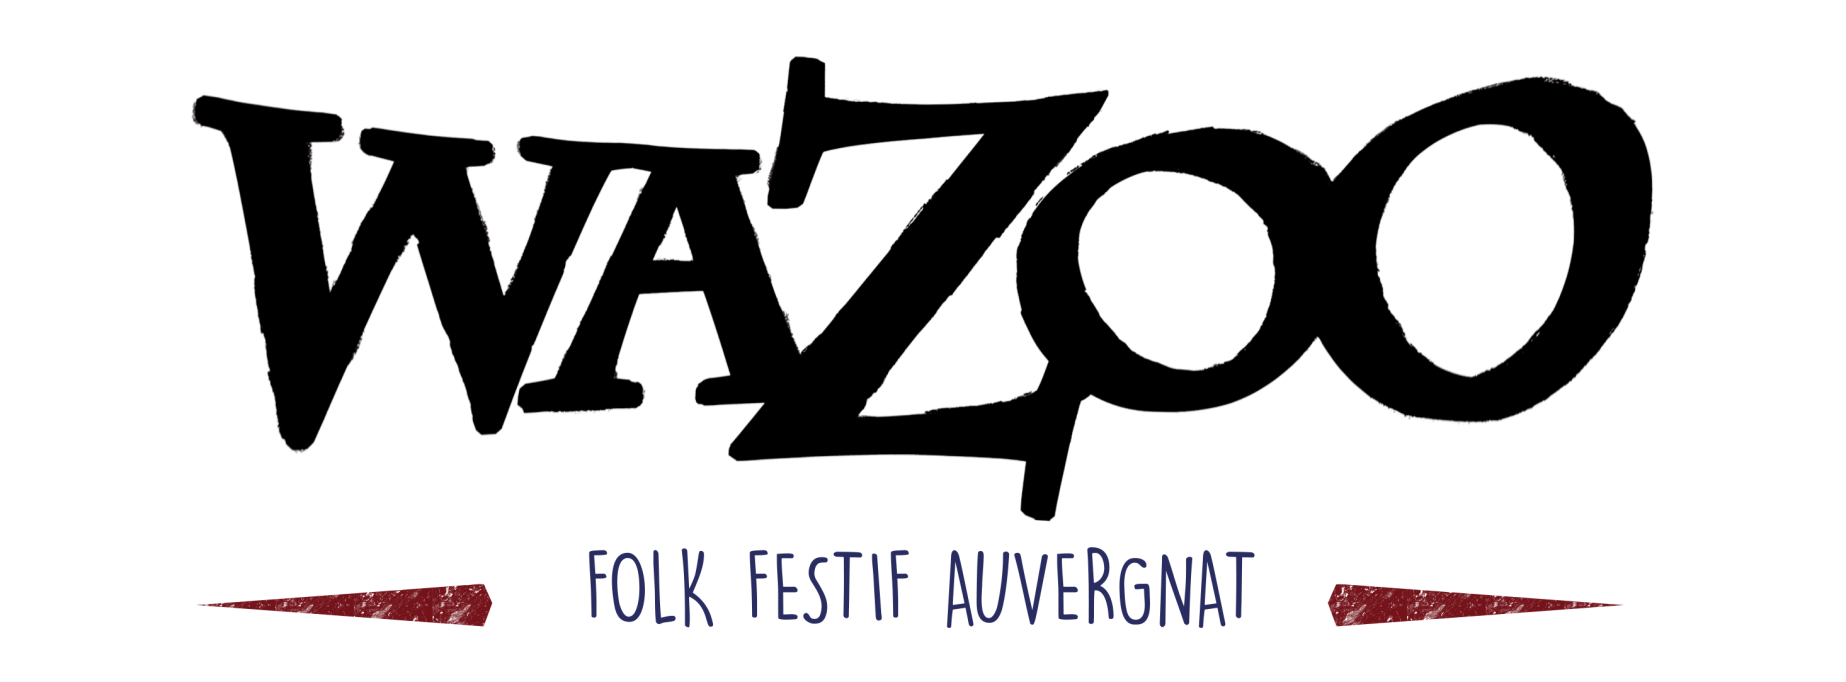 WAZOO - Folk Festif Auvergnat